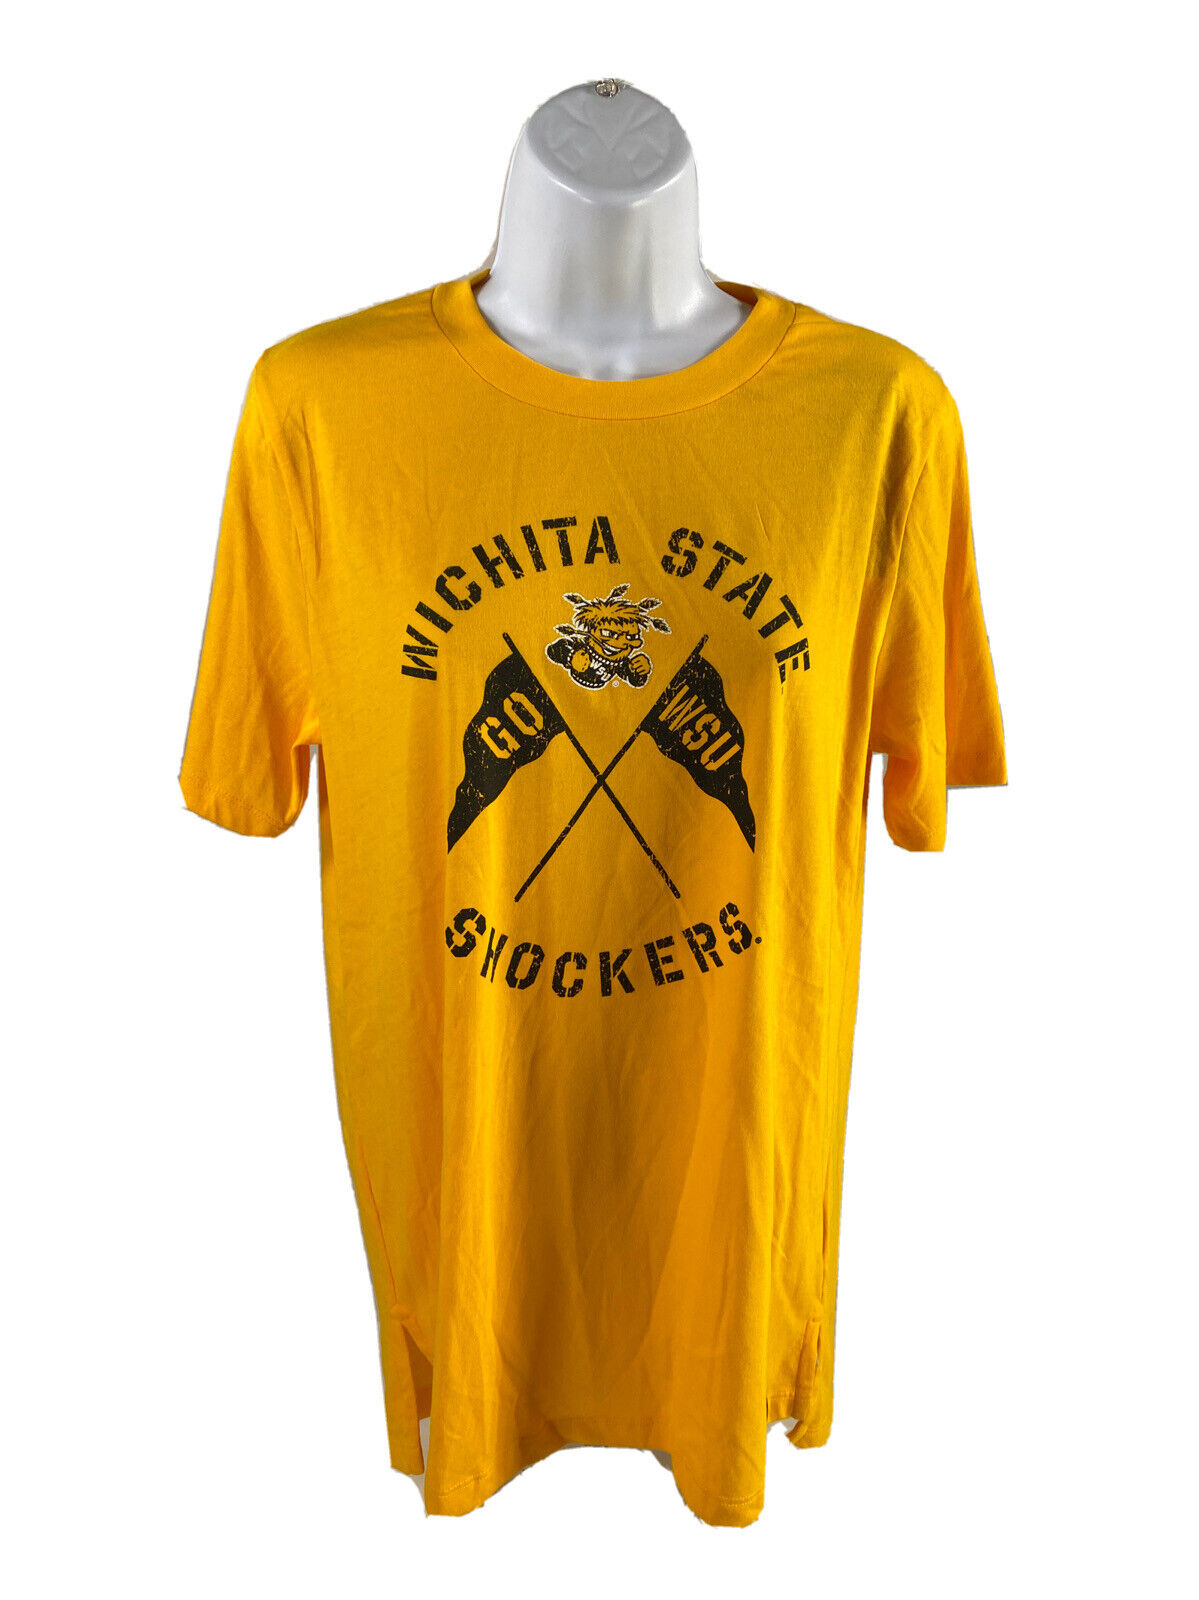 NEW Under Armour Women's Yellow Wichita State University T-Shirt - M